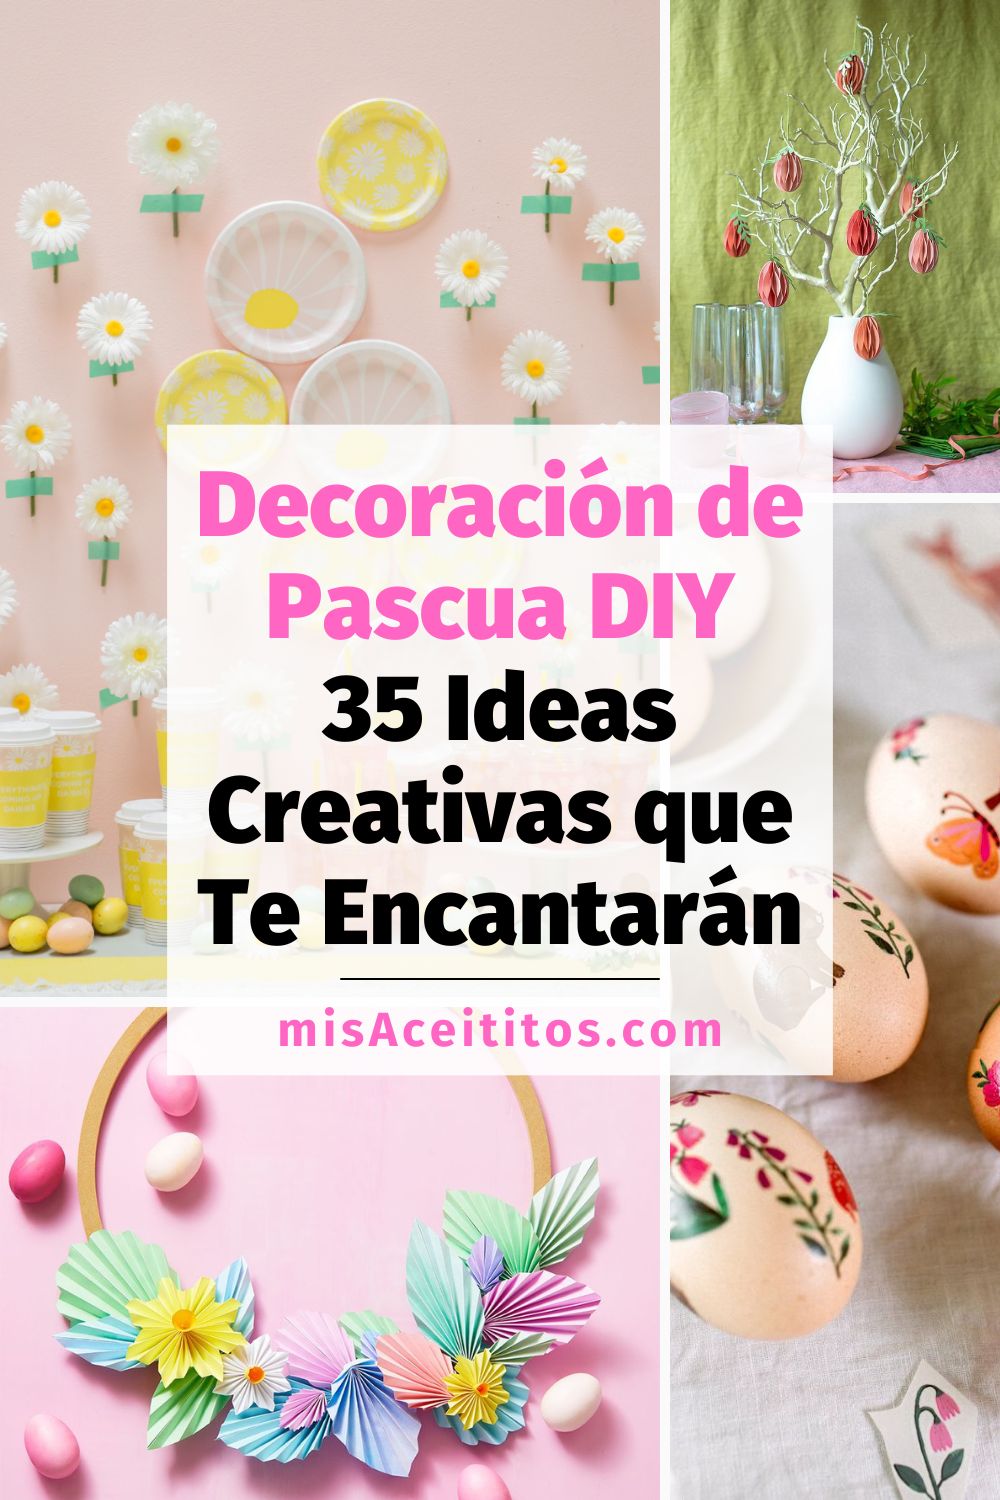 4 ideas de decoración de Pascua DIY